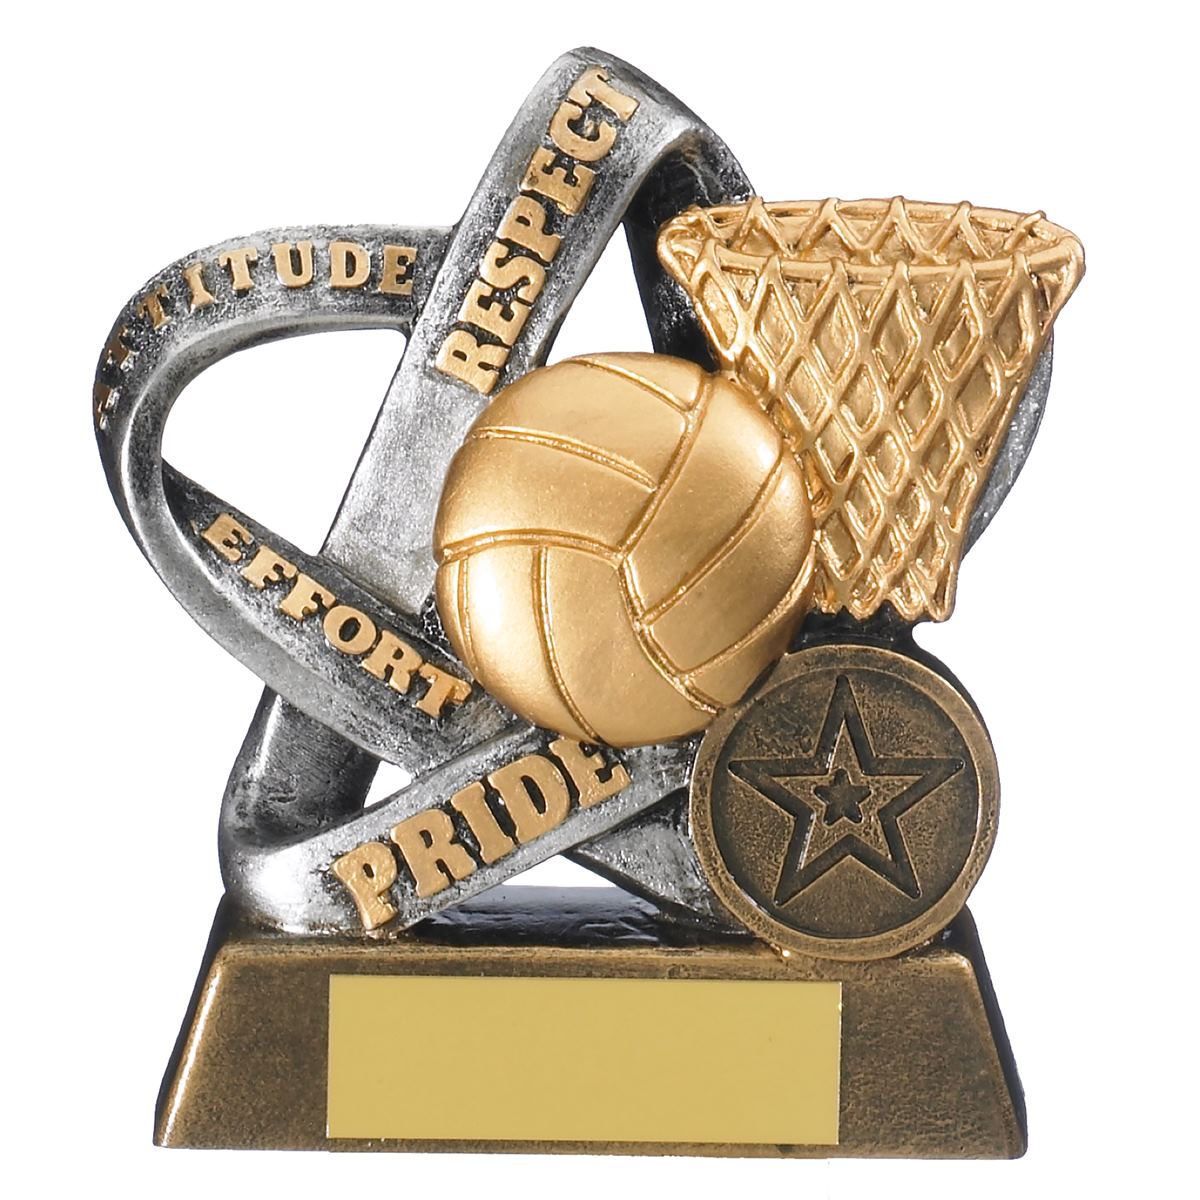 Netball Values Trophy Infinity Award